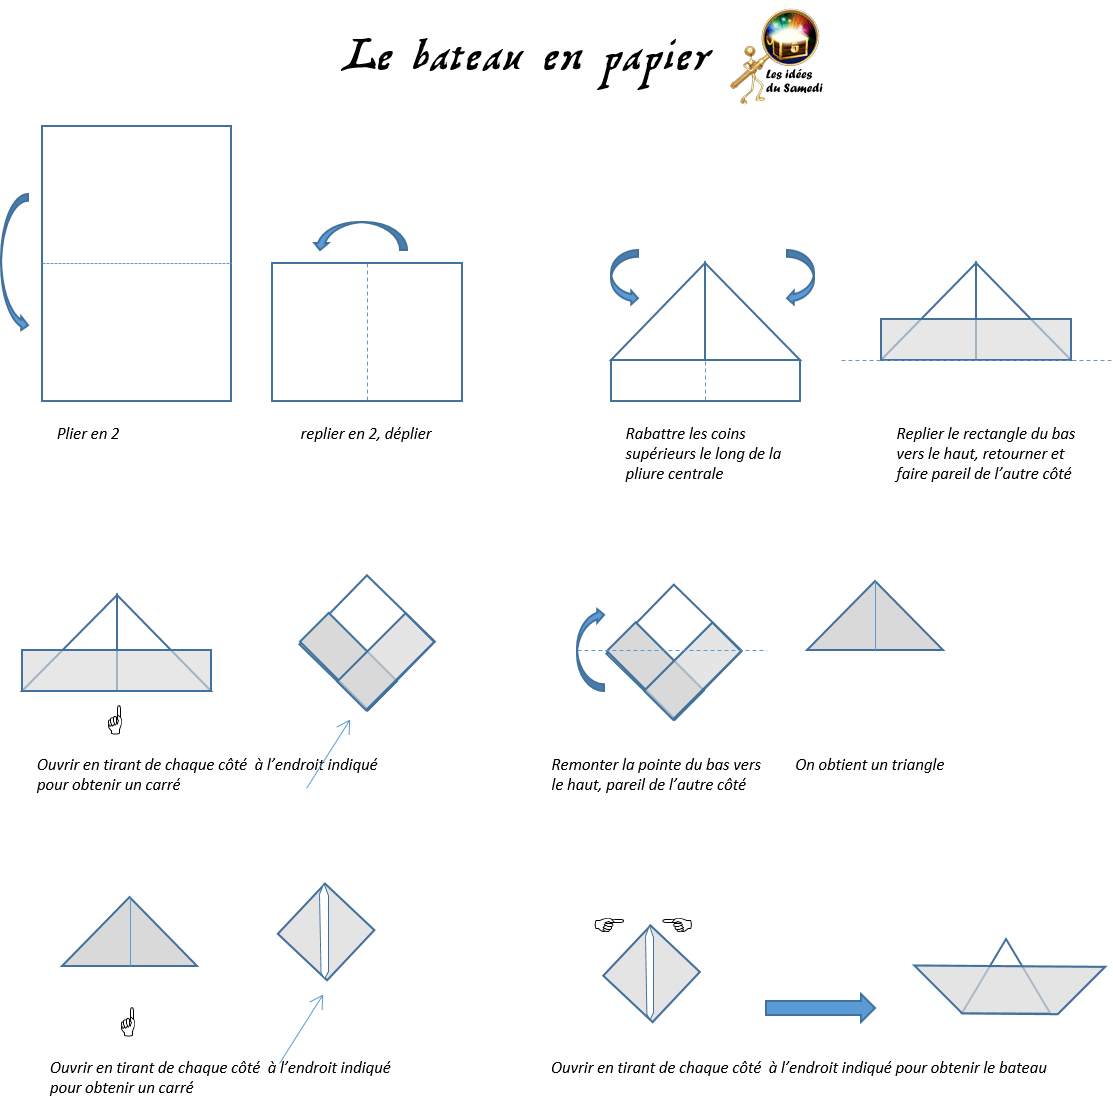 Схема кораблика оригами для детей. Бумажный кораблик схема. Двухтрубный кораблик из бумаги схема. Бумажный кораблик схема складывания пошагово из бумаги. Двухтрубный корабль оригами схема.